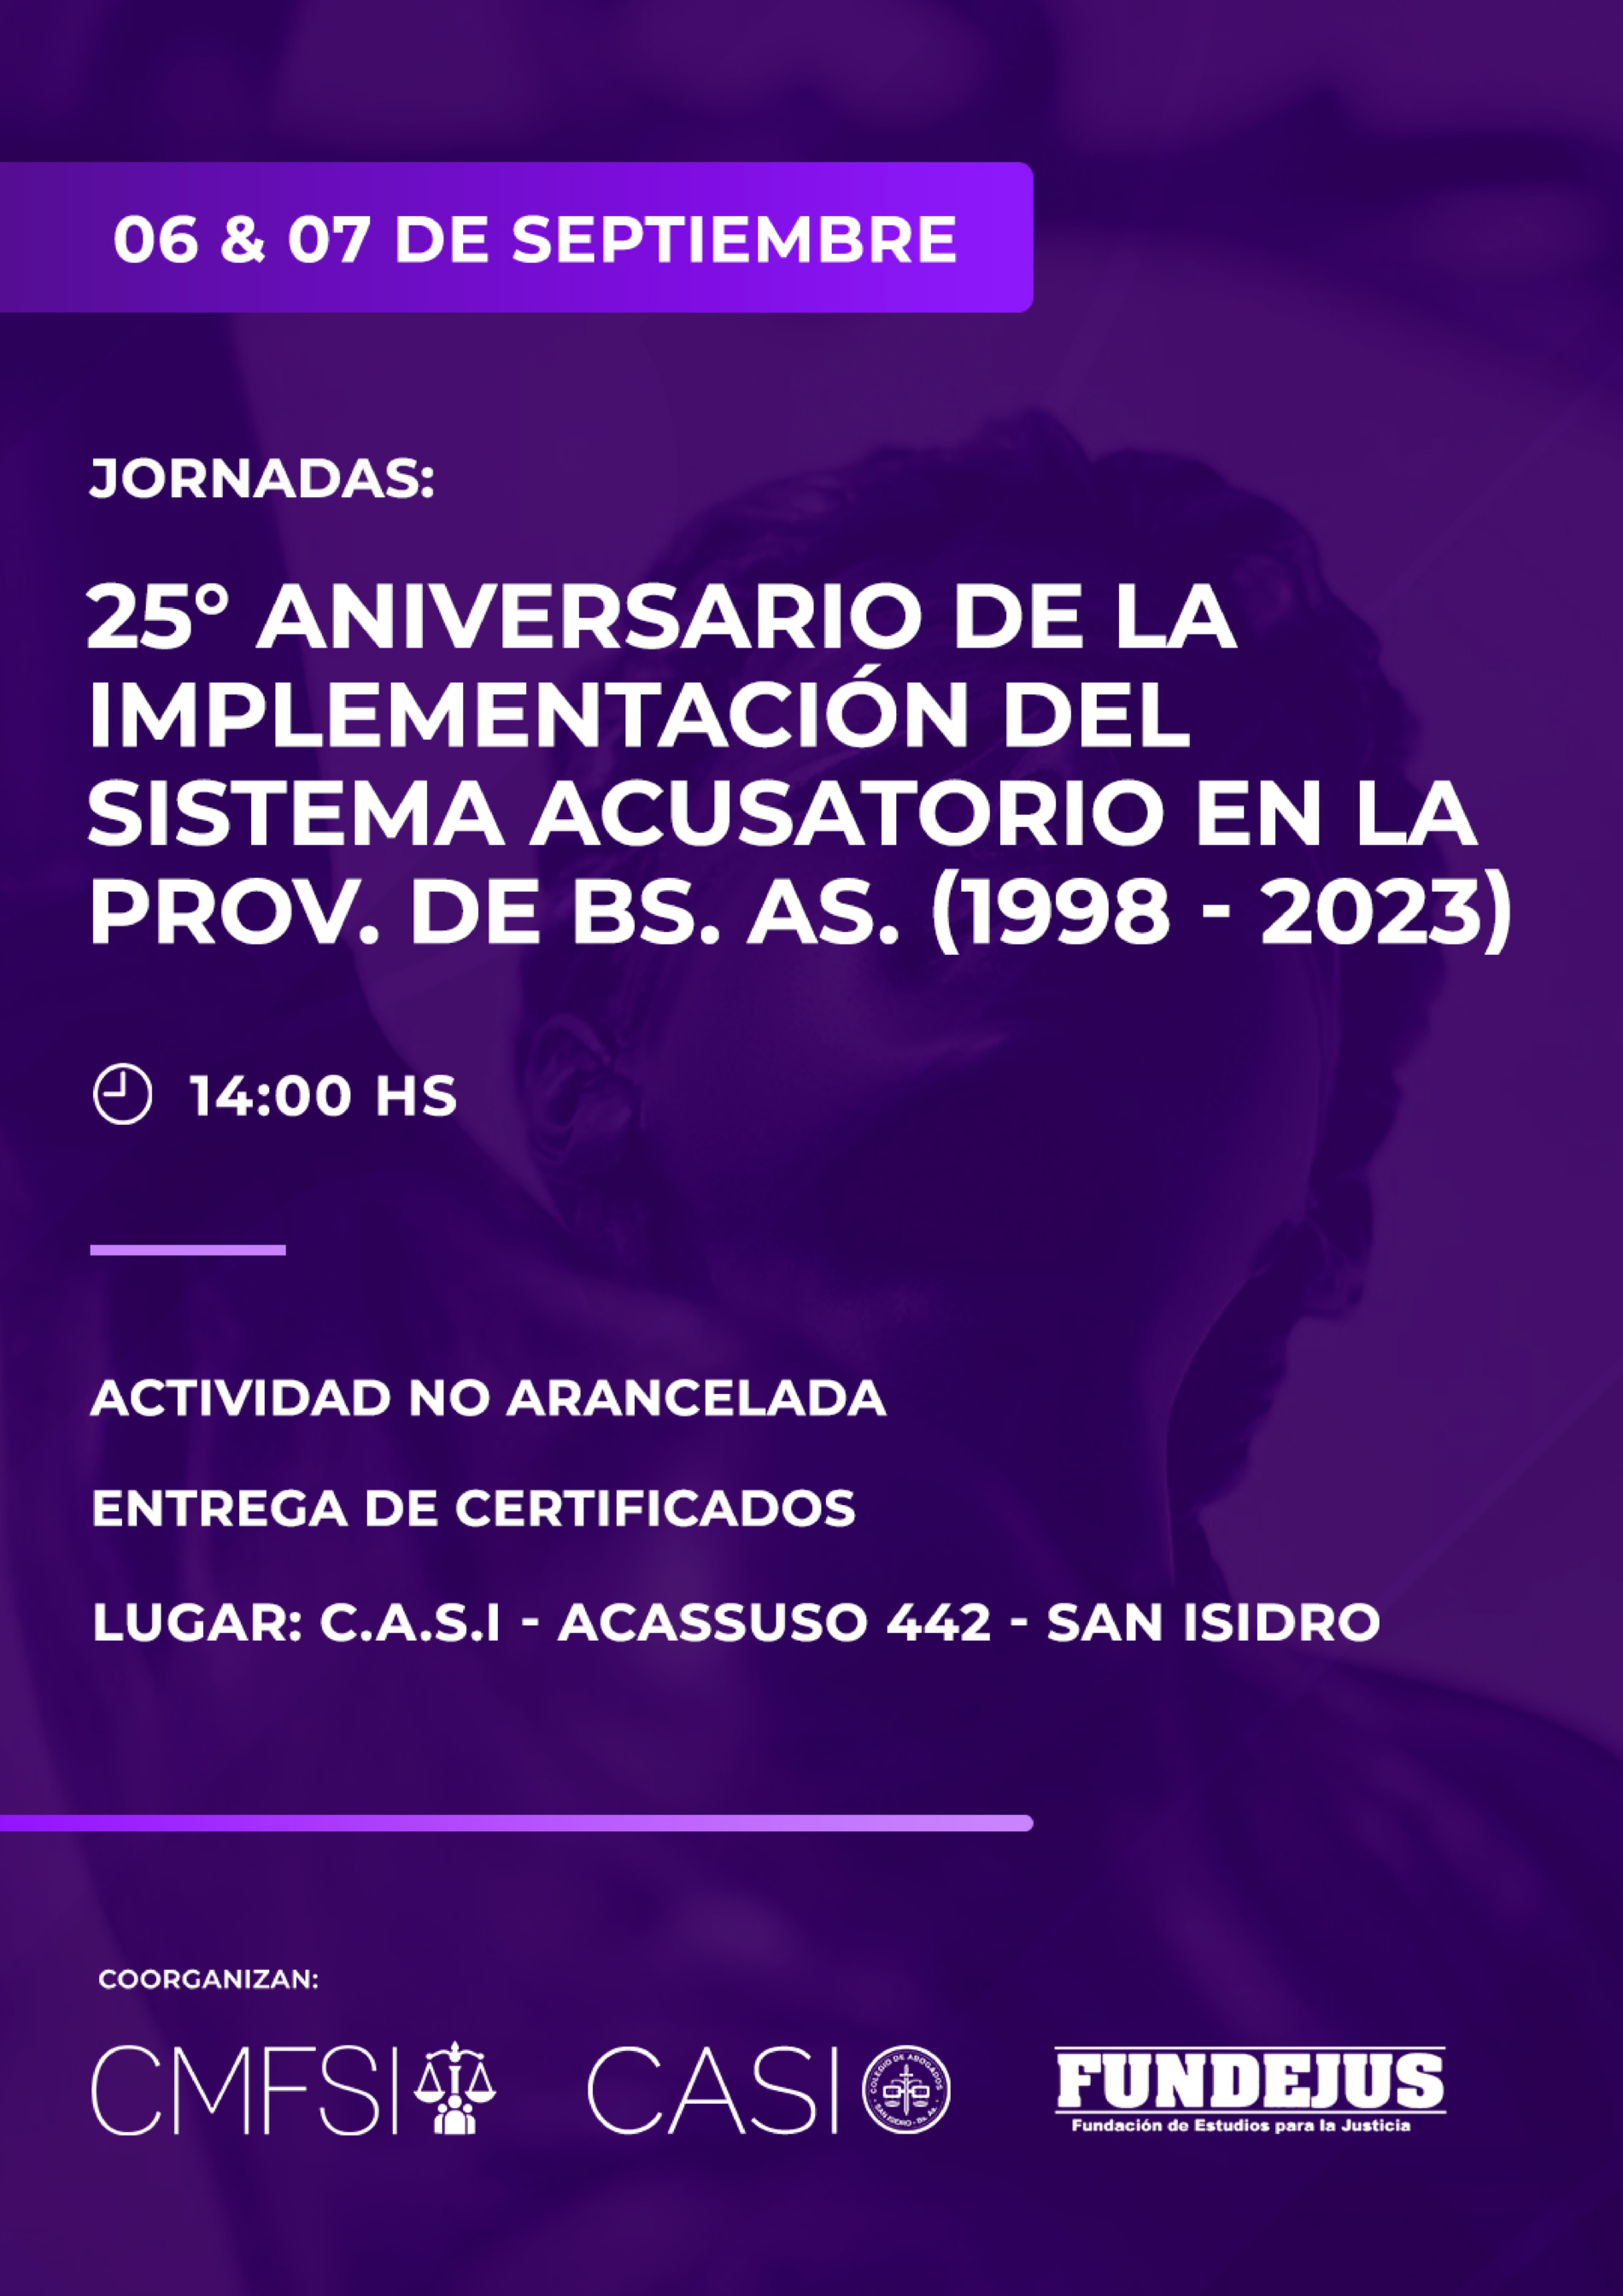 FUNDEJUS invita: Jornadas “25º Aniversario de la implementación del sistema acusatorio en la provincia de Buenos Aires”. (1998-2023) – CRONOGRAMA COMPLETO